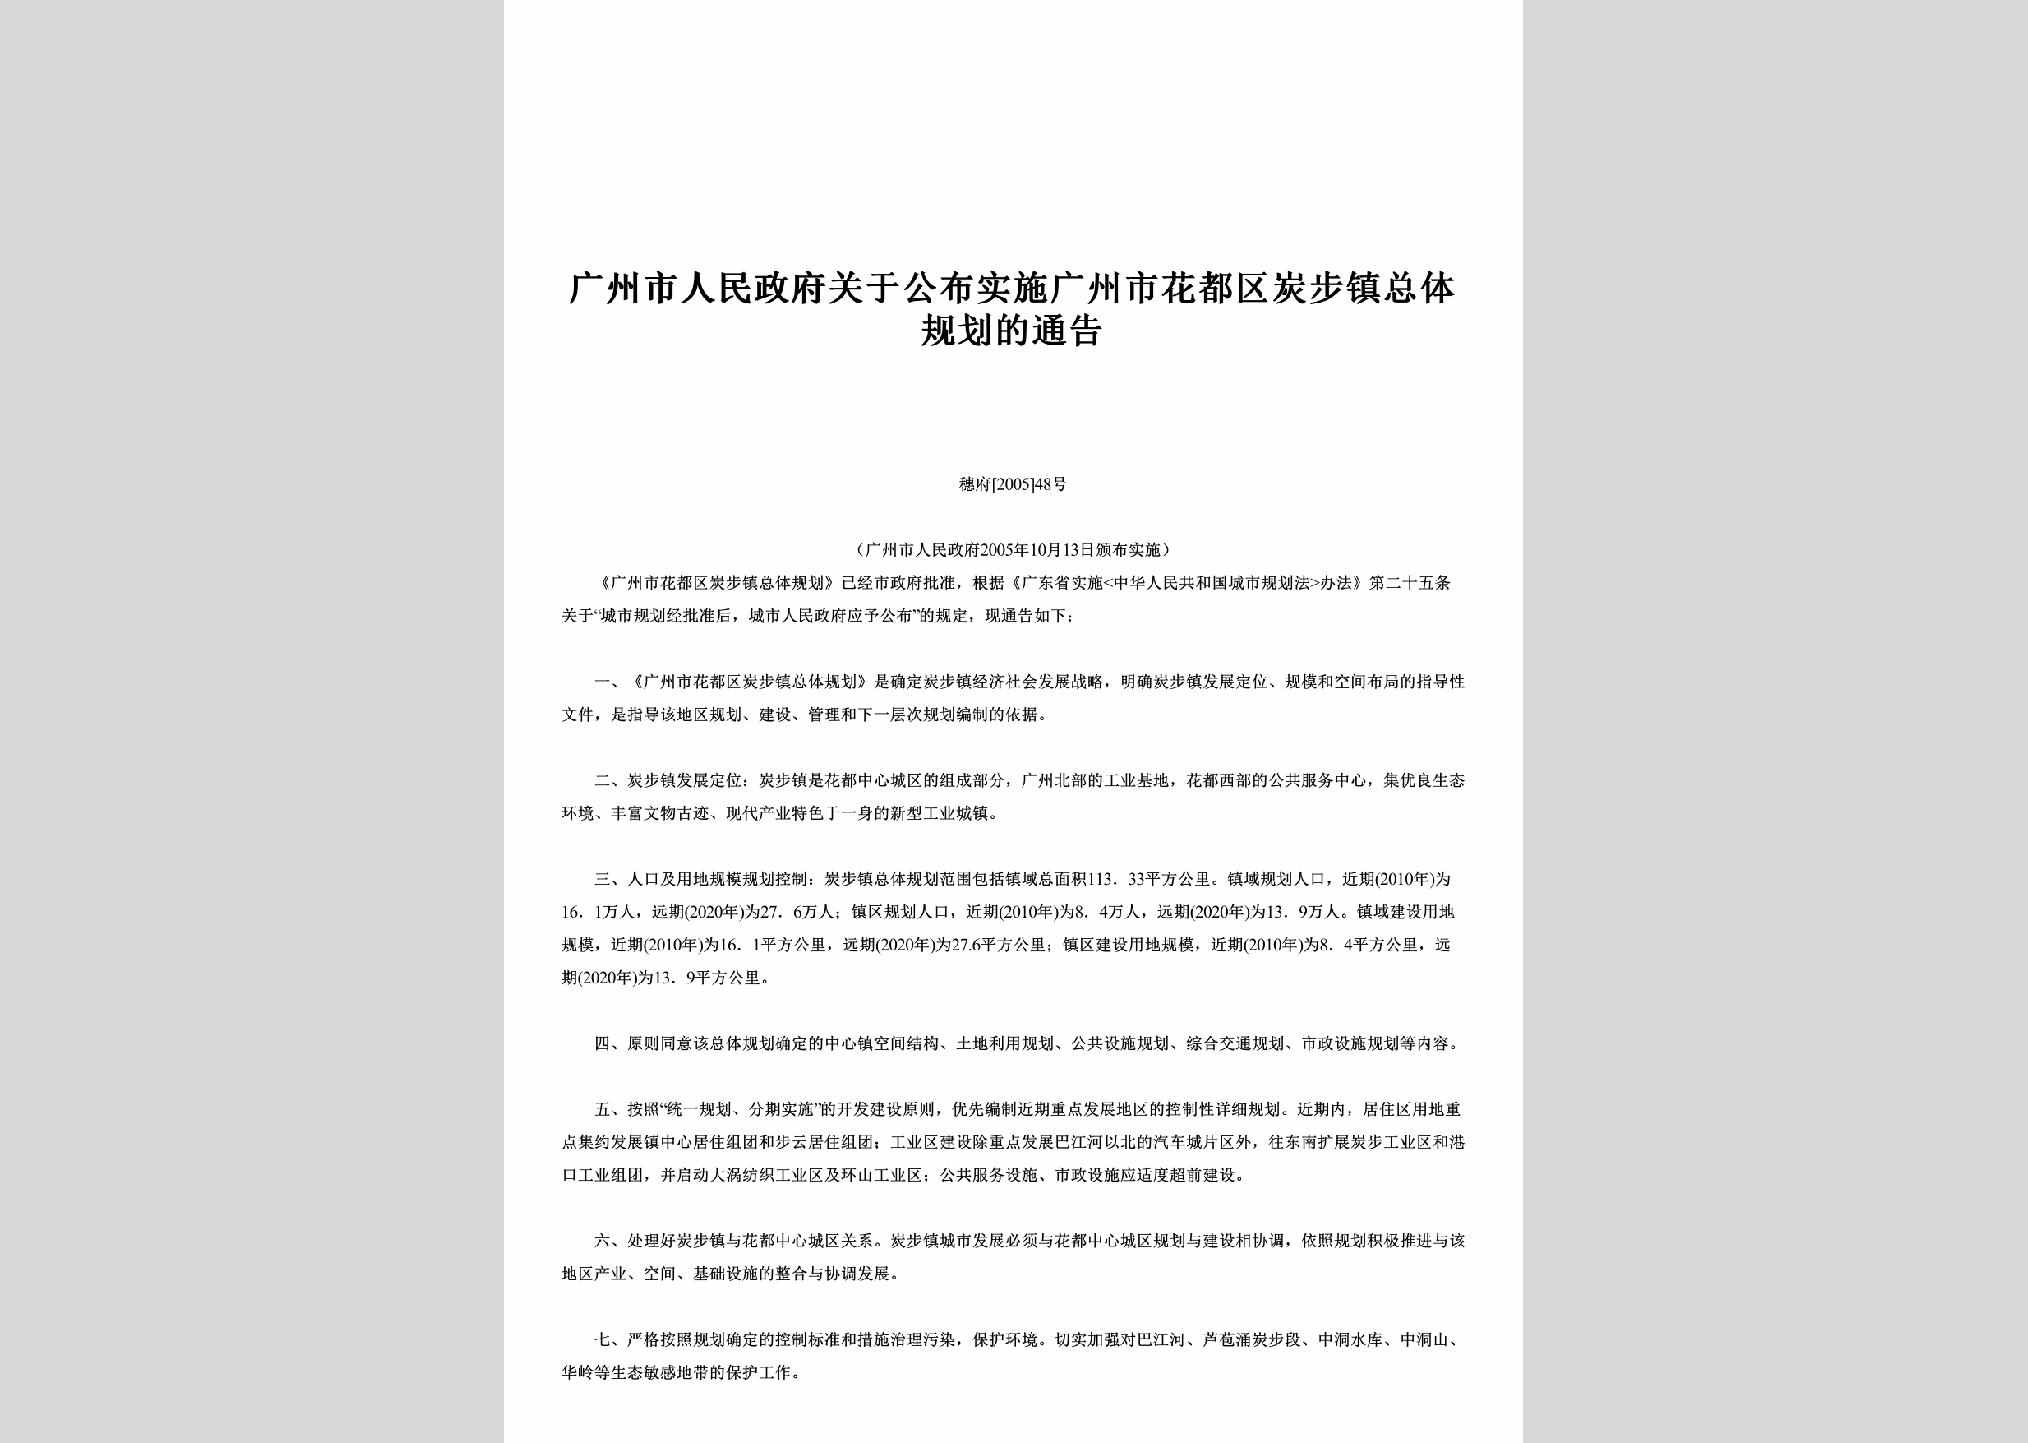 穗府[2005]48号：关于公布实施广州市花都区炭步镇总体规划的通告